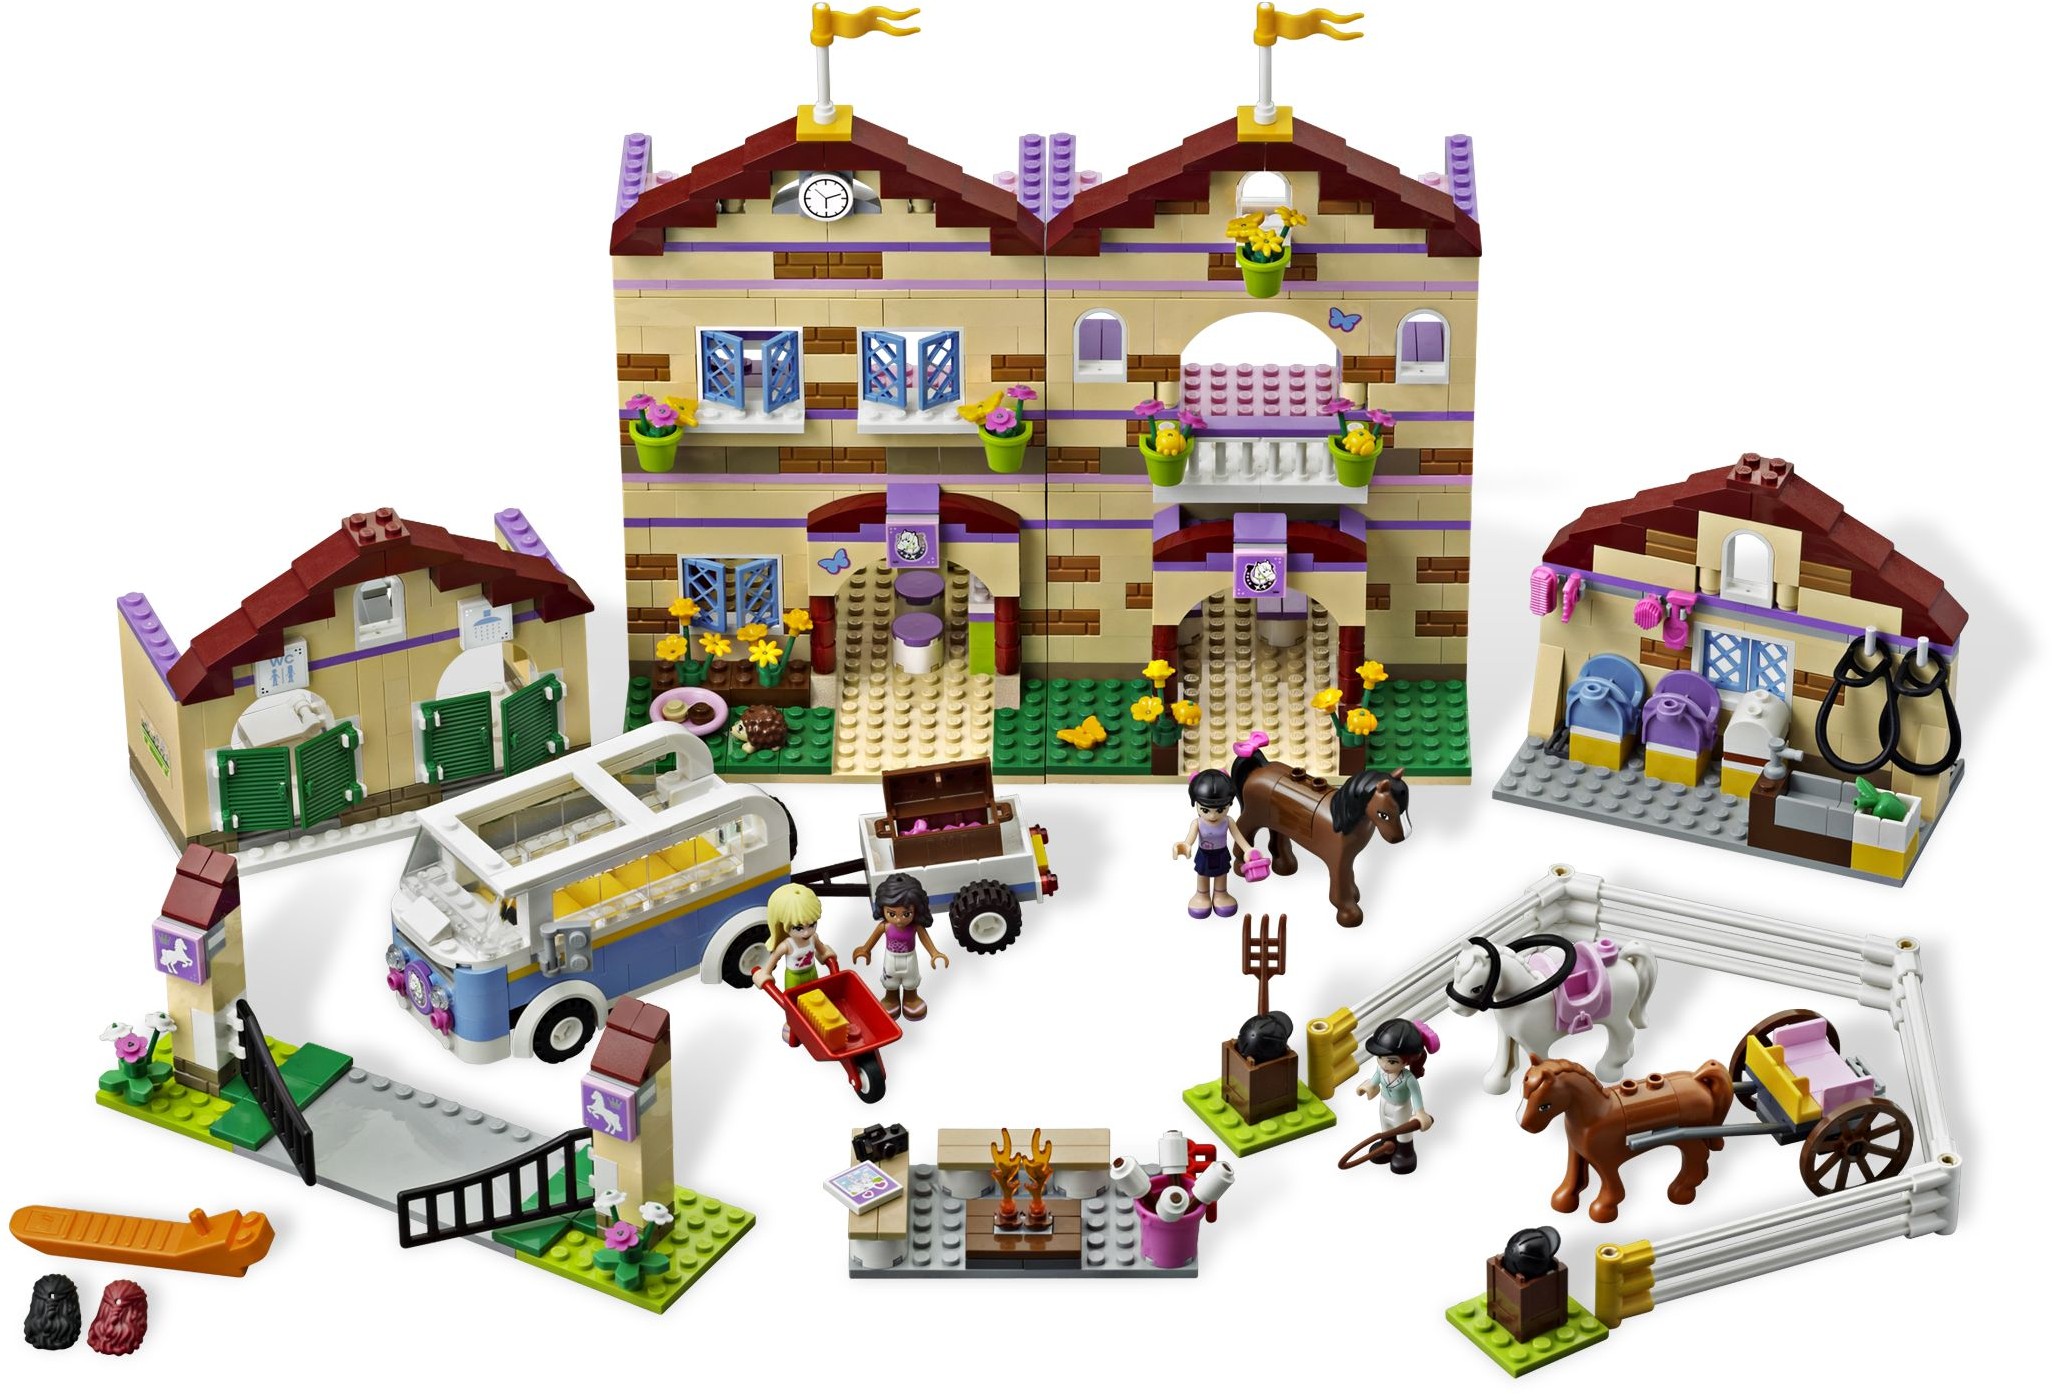 LEGO Friends Brickset